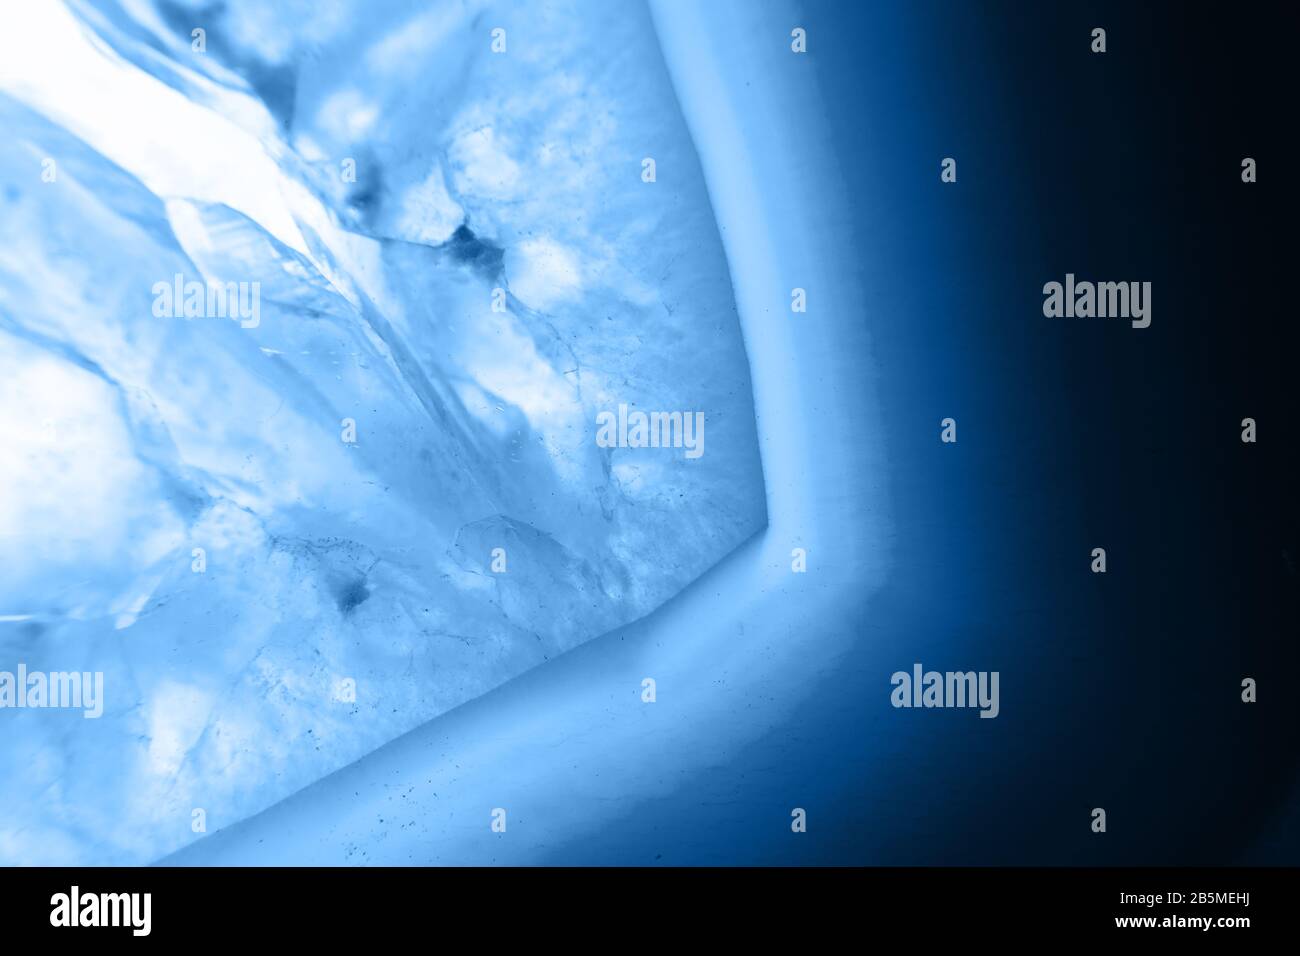 Résumé contexte - cristal agate tranche minérale, couleur de l'année 2020 pantone classique bleu 19-4052 Banque D'Images